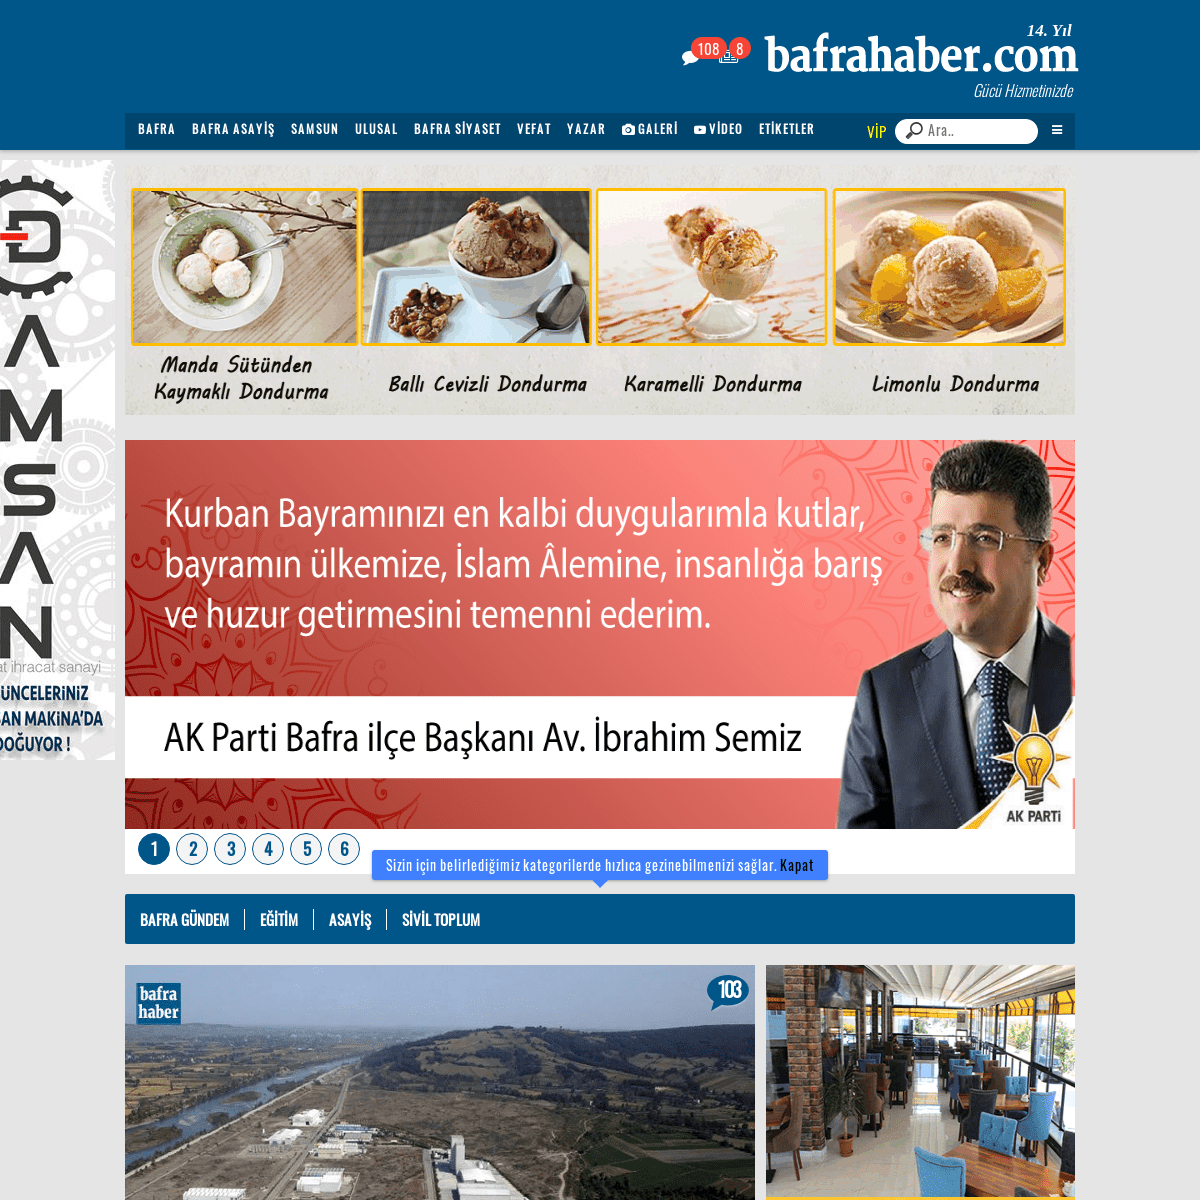 BAFRAHABER.COM - Bafra'nın açılış sayfası